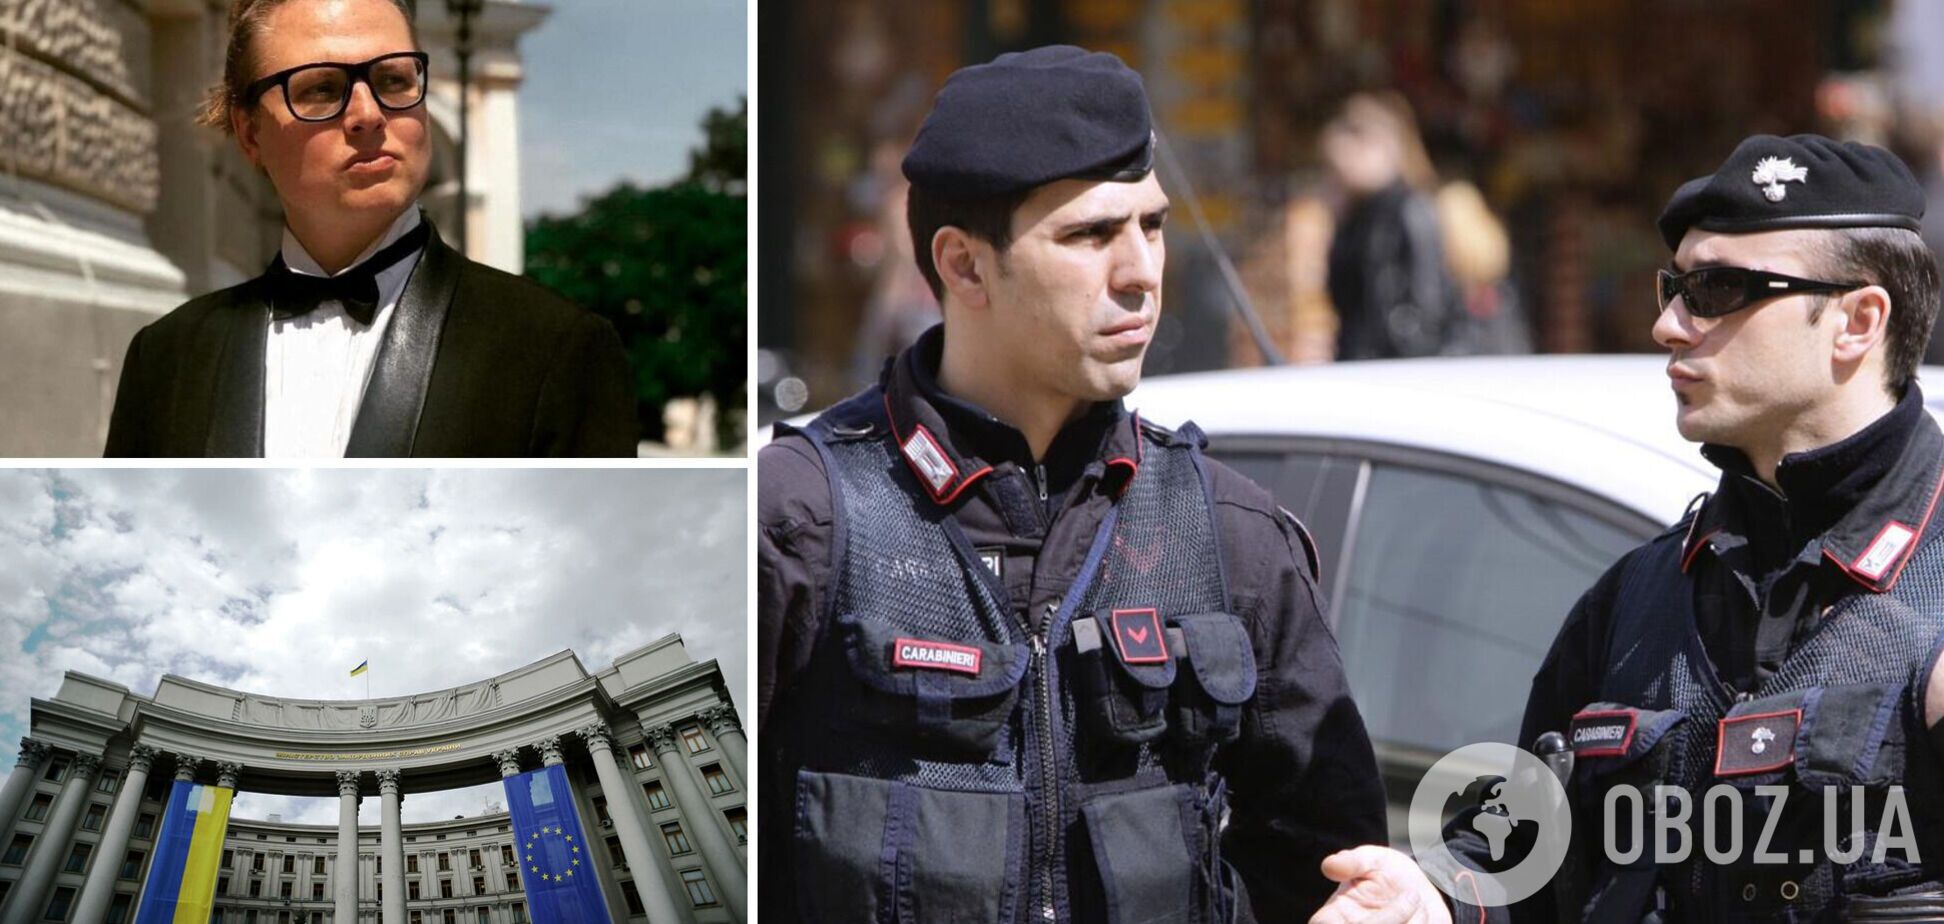 РФ требует экстрадиции арестованного в Италии украинского режиссера: появилась реакция МИД